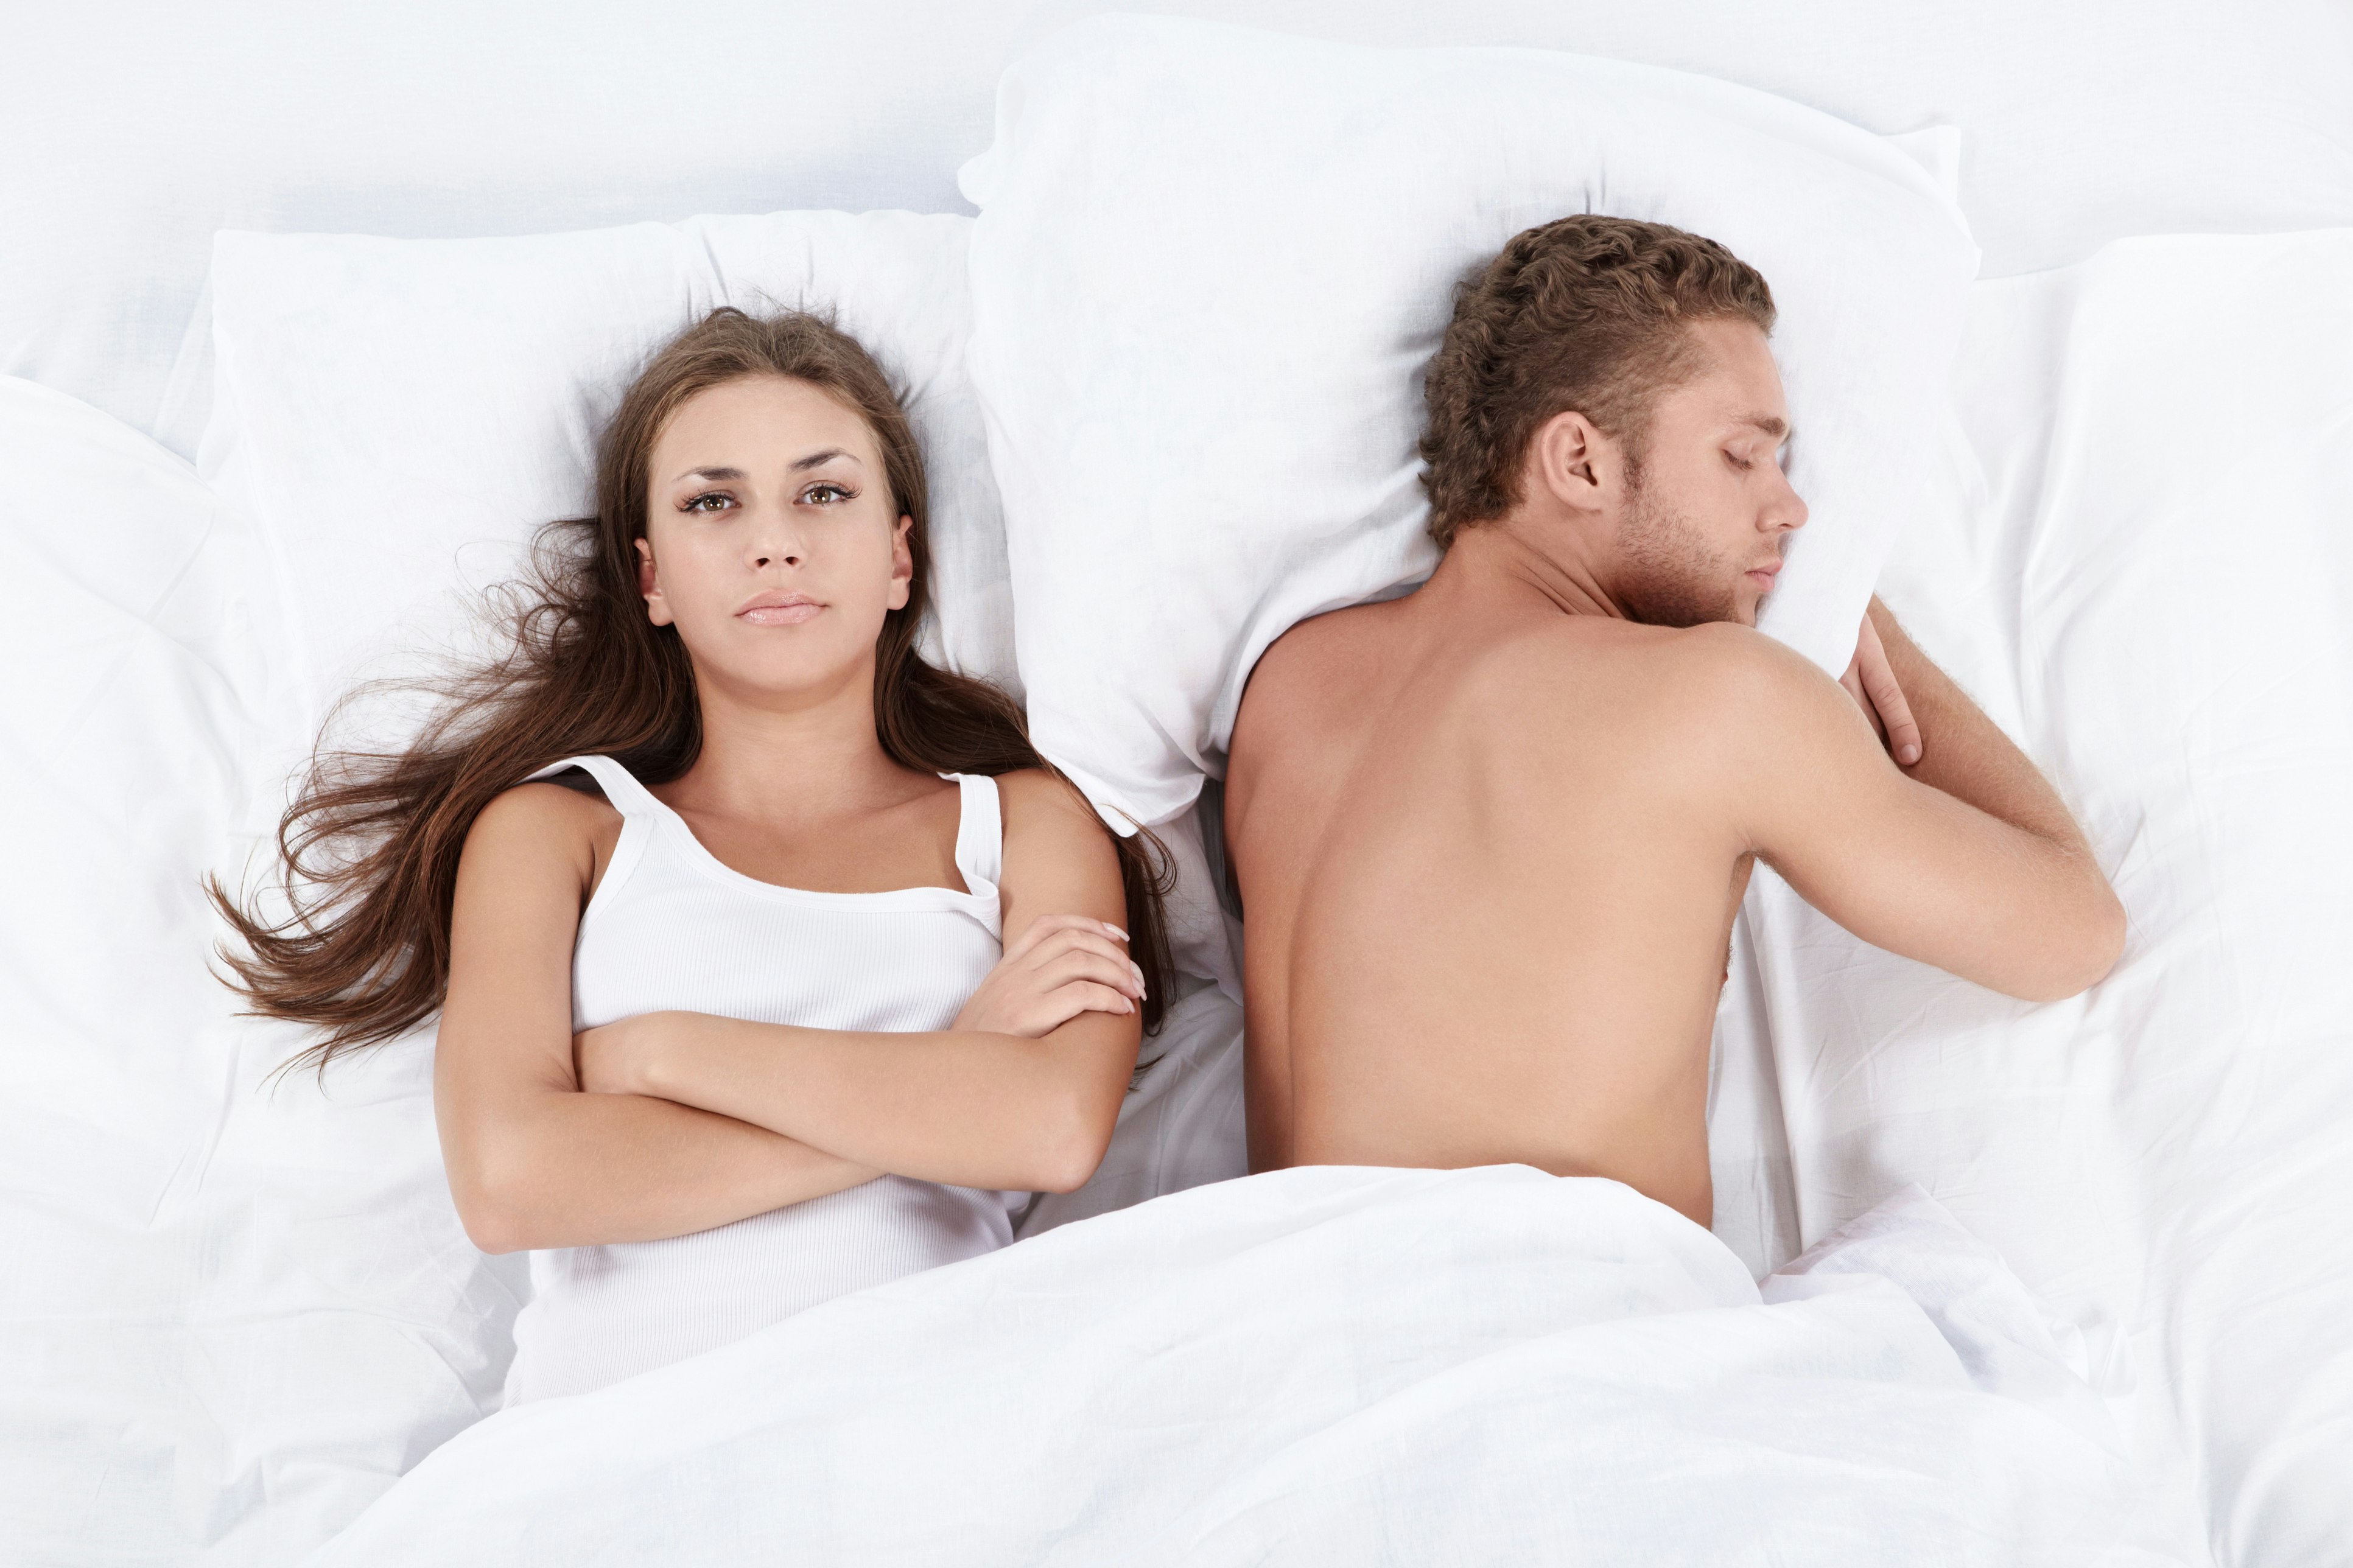 kone sover sex lyst Porno billeder Hd